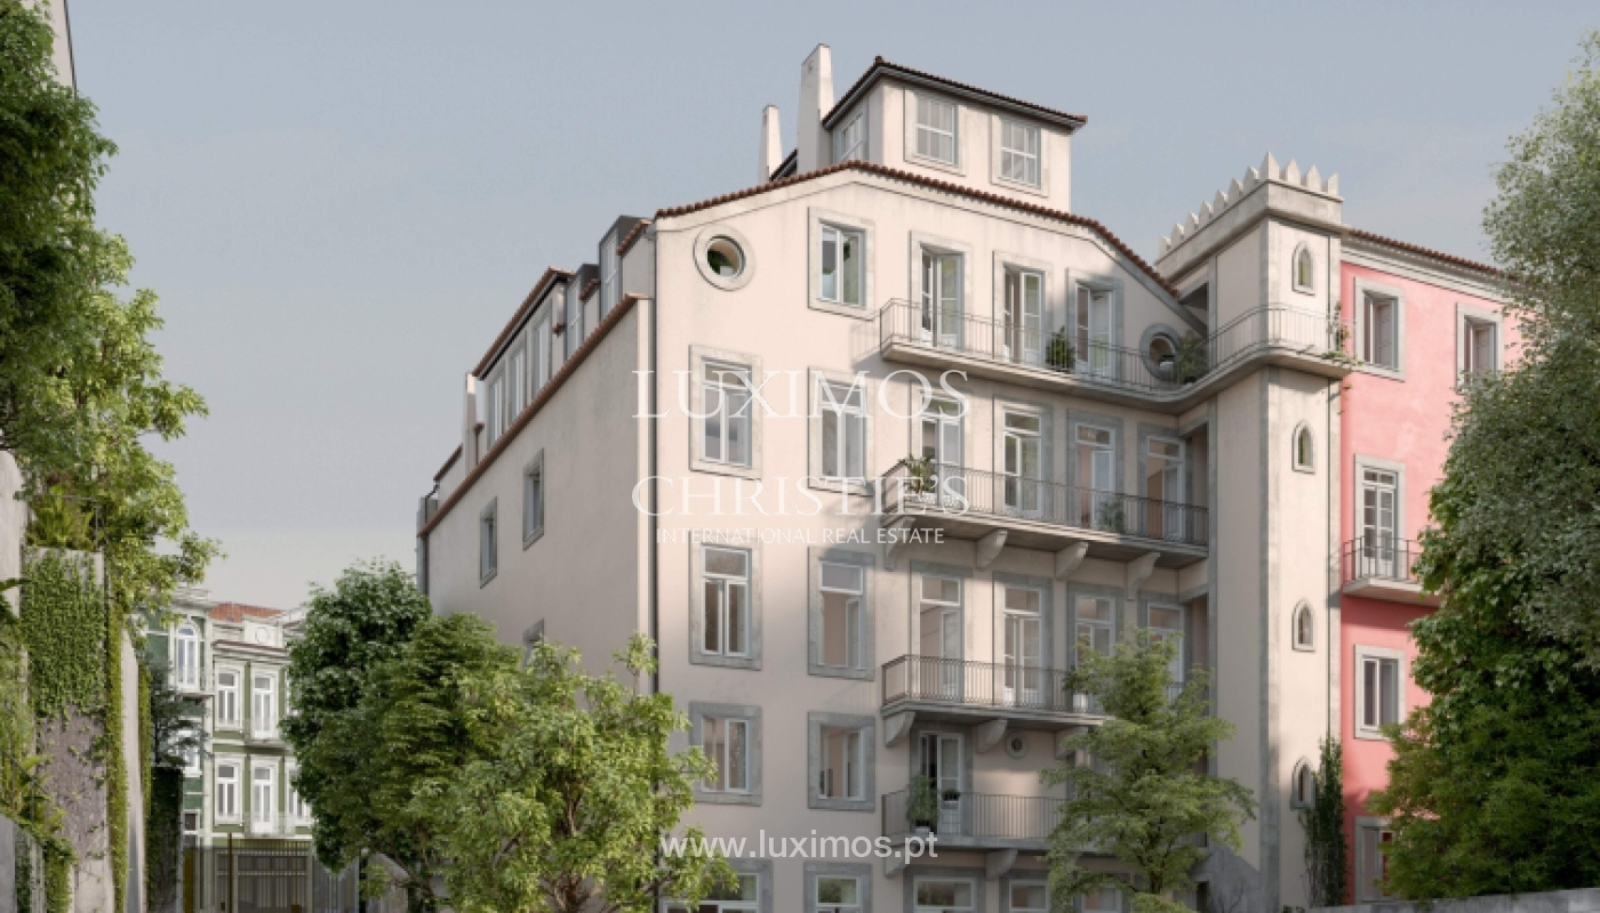 Venda apartamento novo, empreendimento de alto padrão, Porto, Portugal_161695